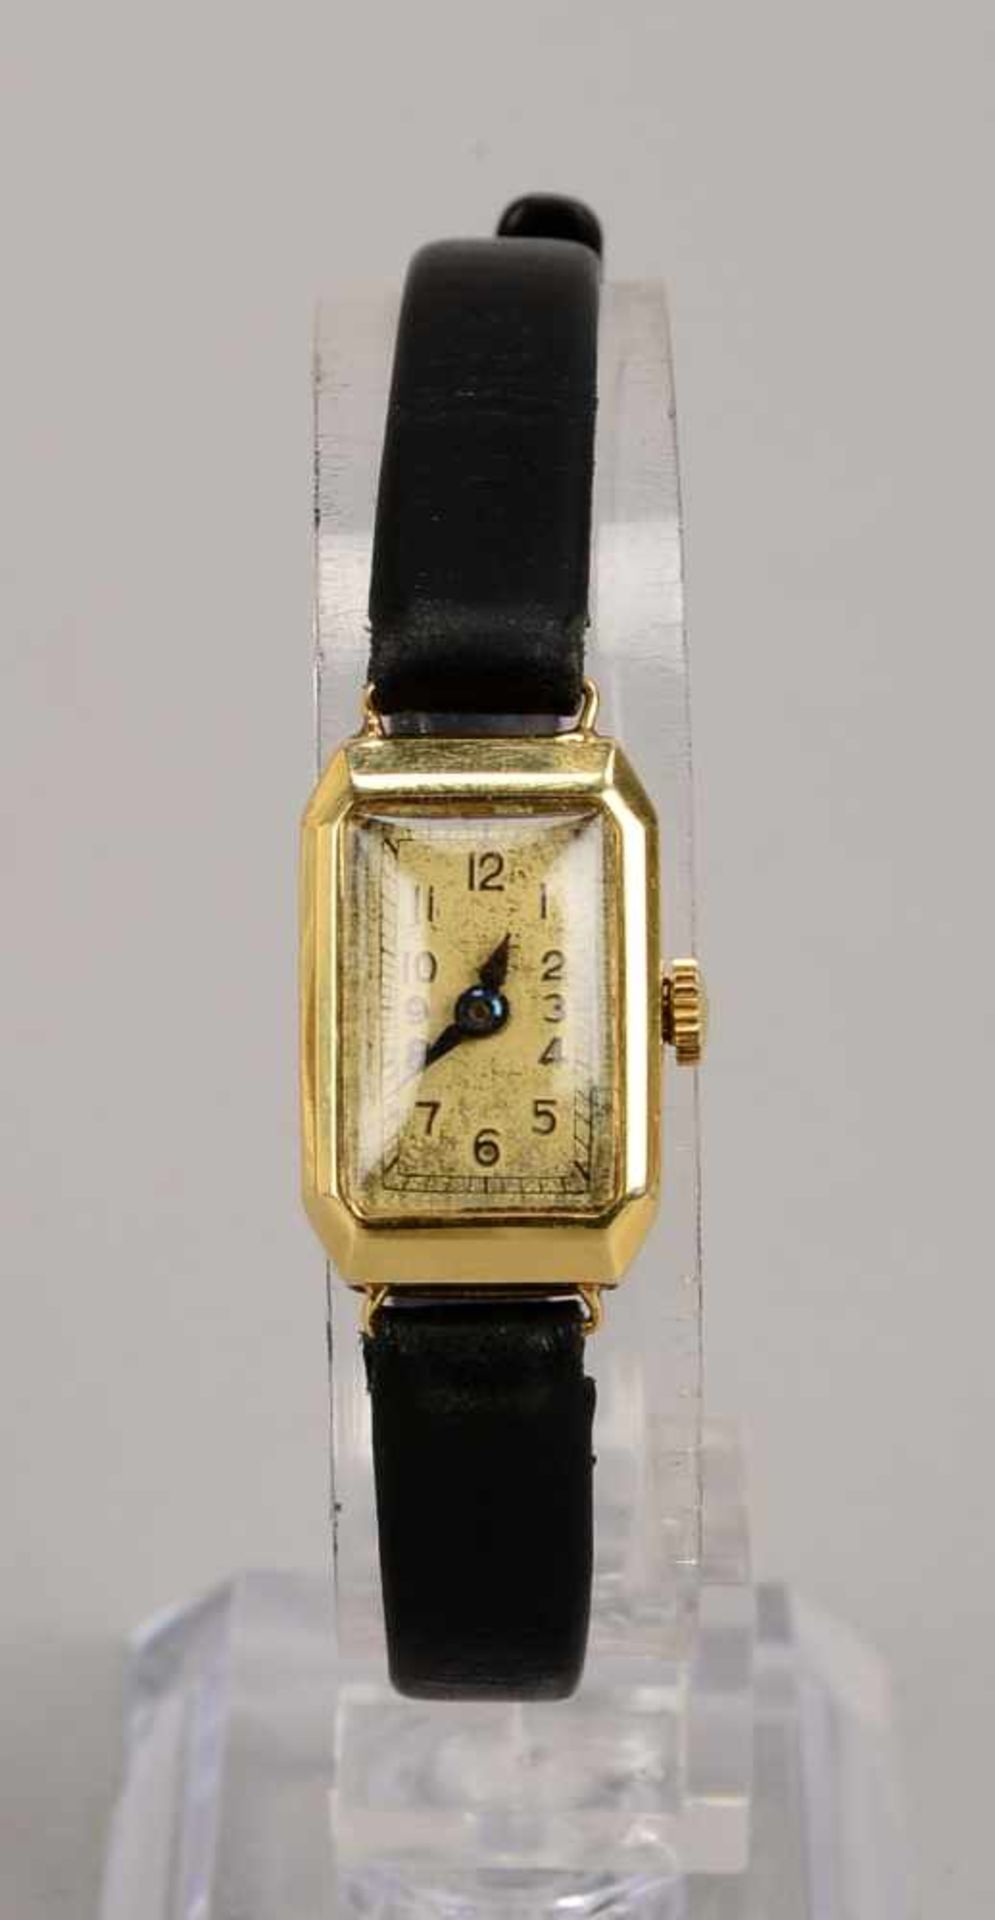 Damen-Armbanduhr, 585 GG, rechteckiges Gehäuse, Uhr läuft an, an schwarzem Lederarmband; Maße - Bild 2 aus 2